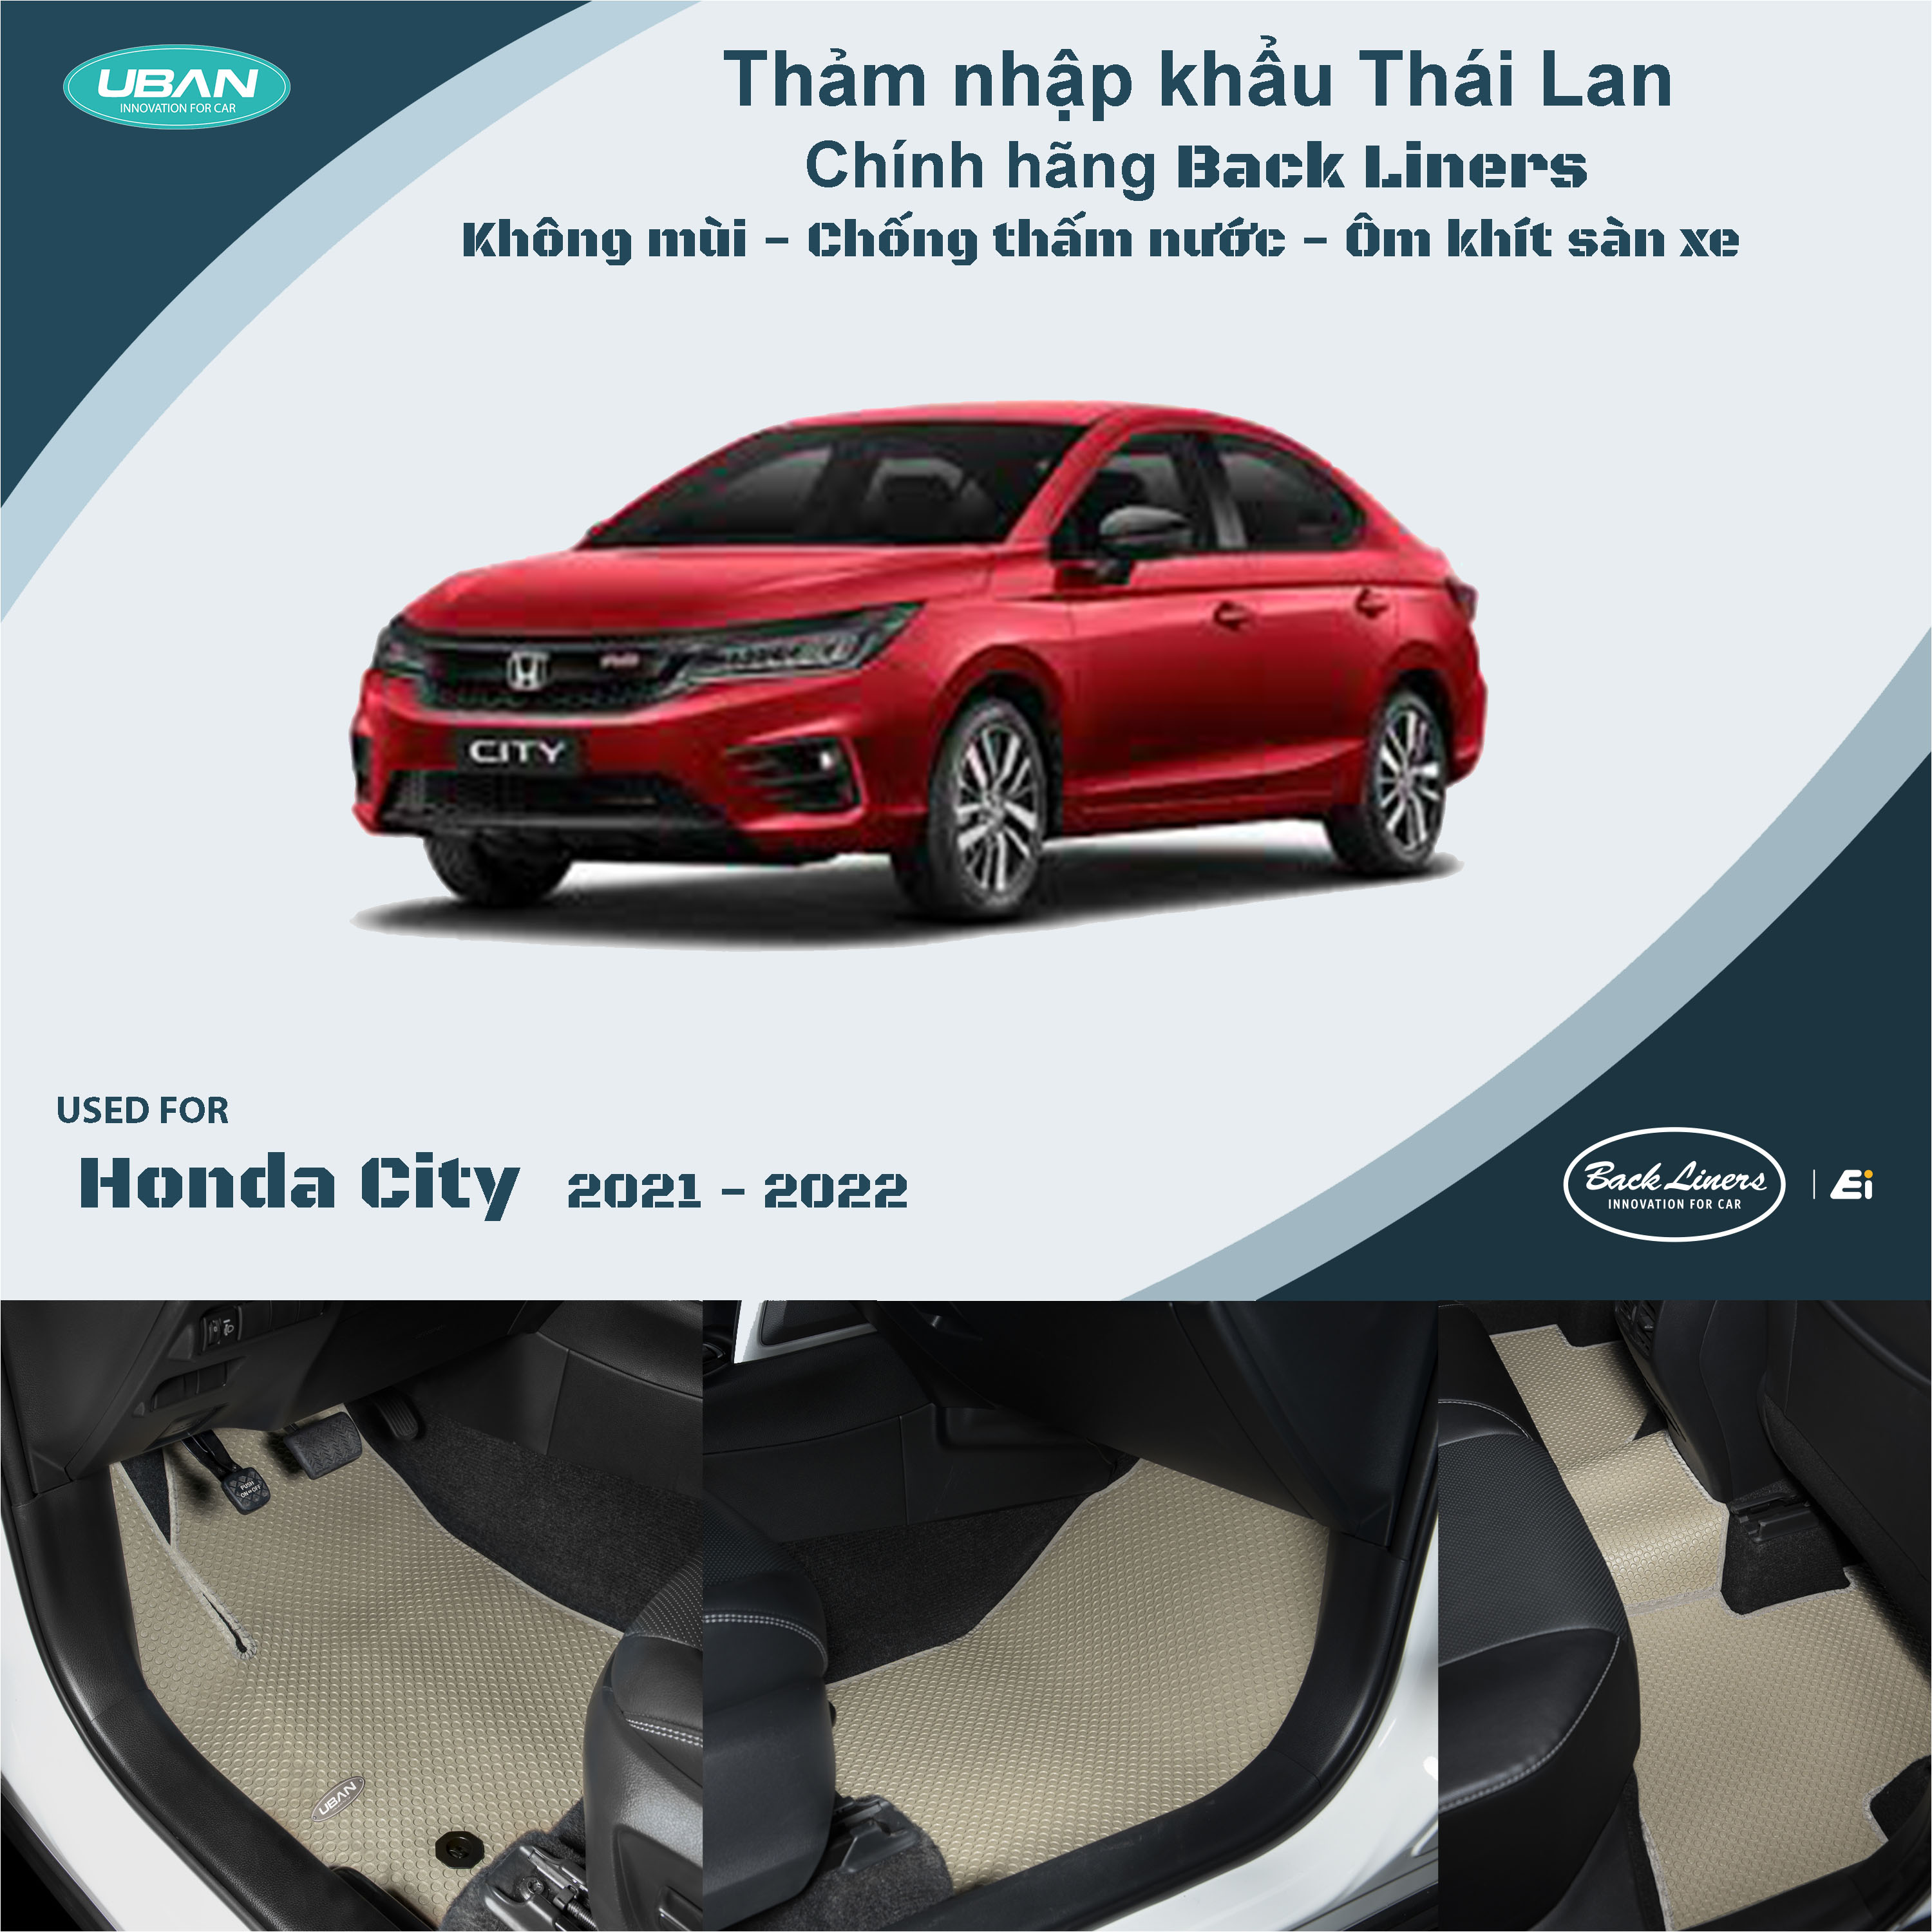 Thông số kỹ thuật và trang bị xe Honda City 2021 mới